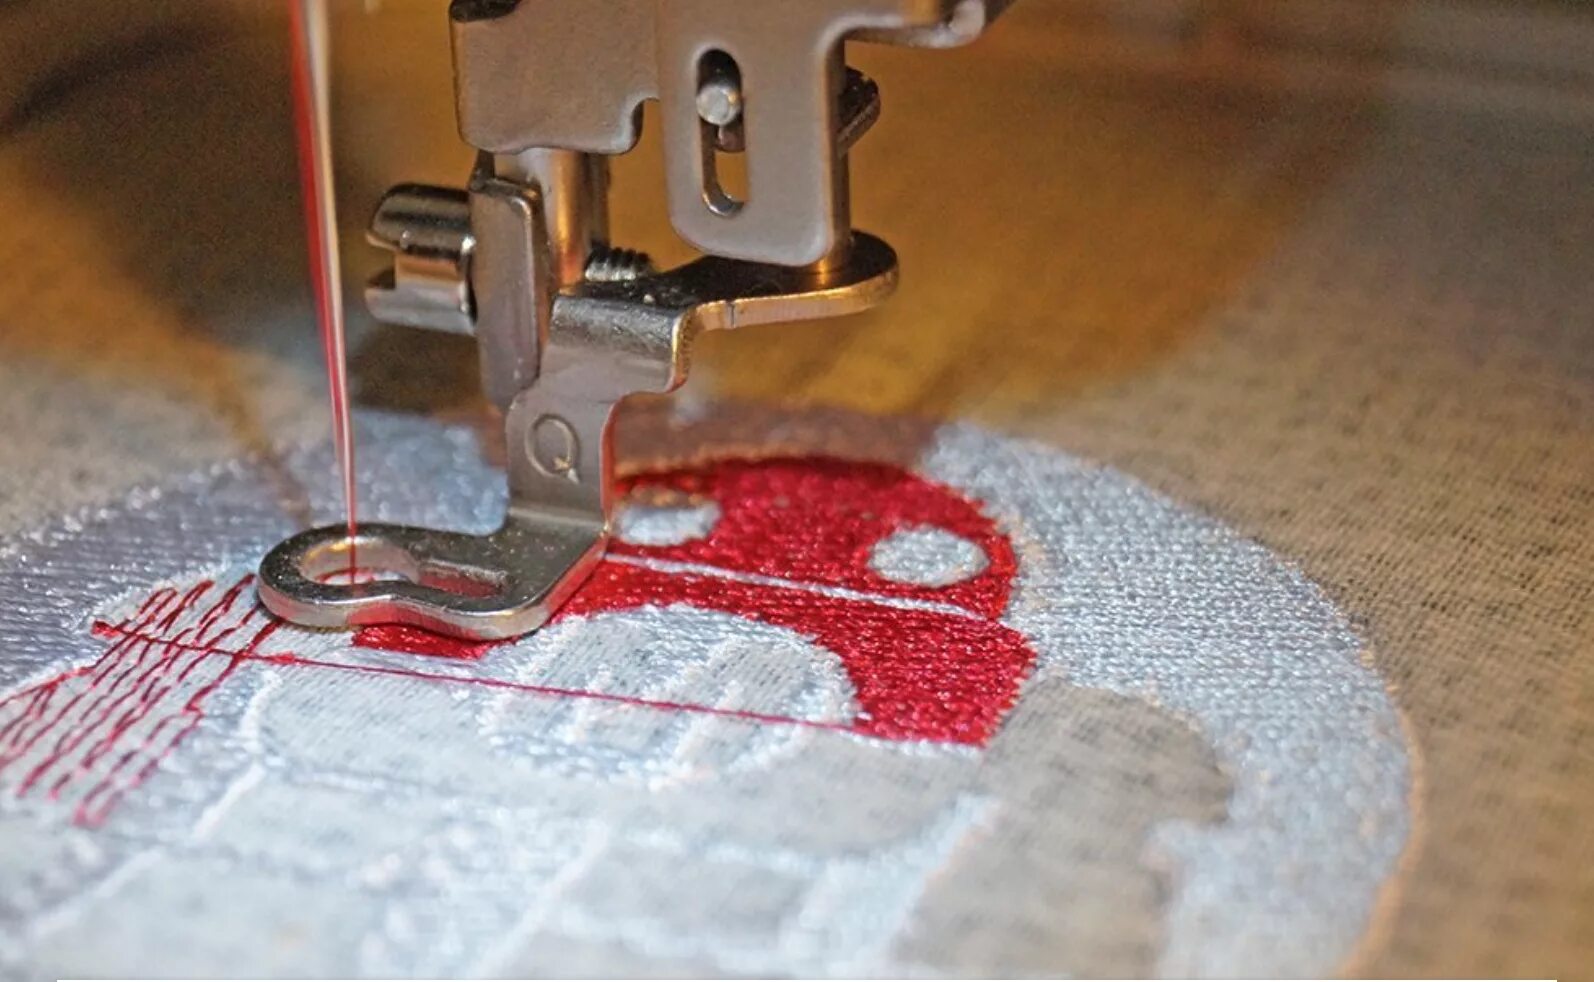 Буквы на швейной машинке. Вышивка на швейной машинке. Вышивка на ткани швейной машинкой. Машинка для вышивания рисунка на ткани. Вышивка на бытовой швейной машине.